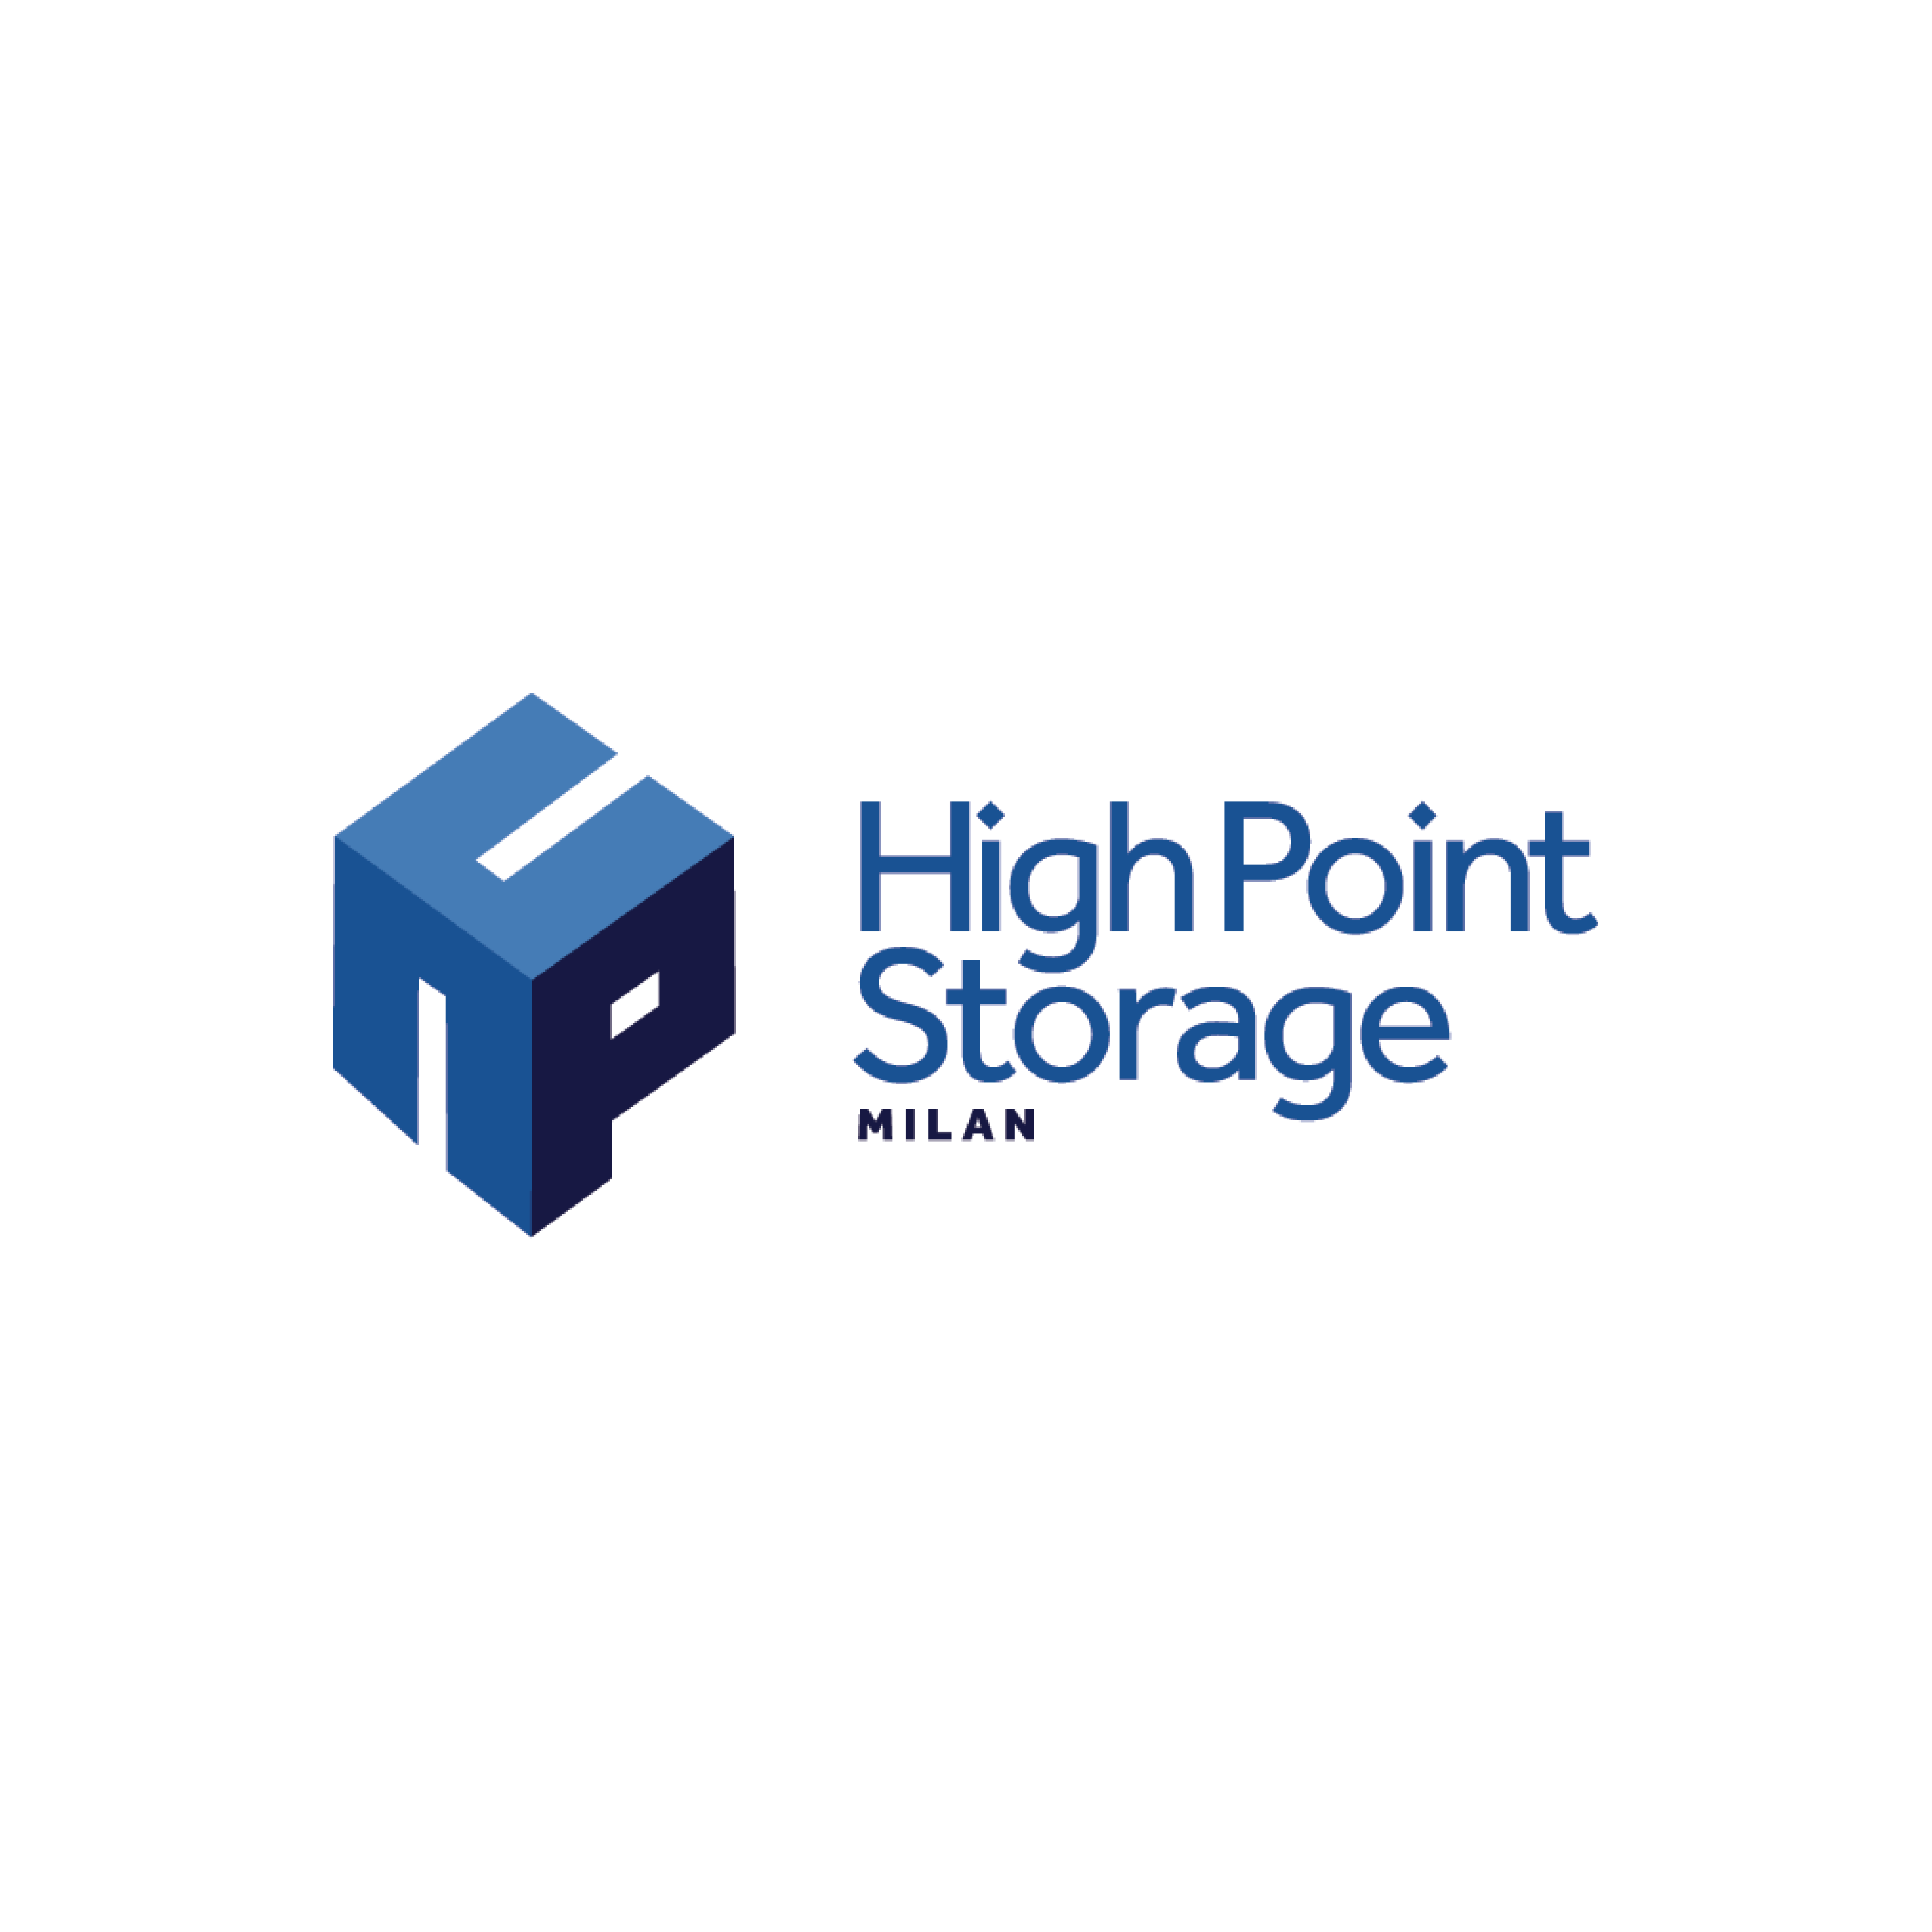 High Point Storage Milan